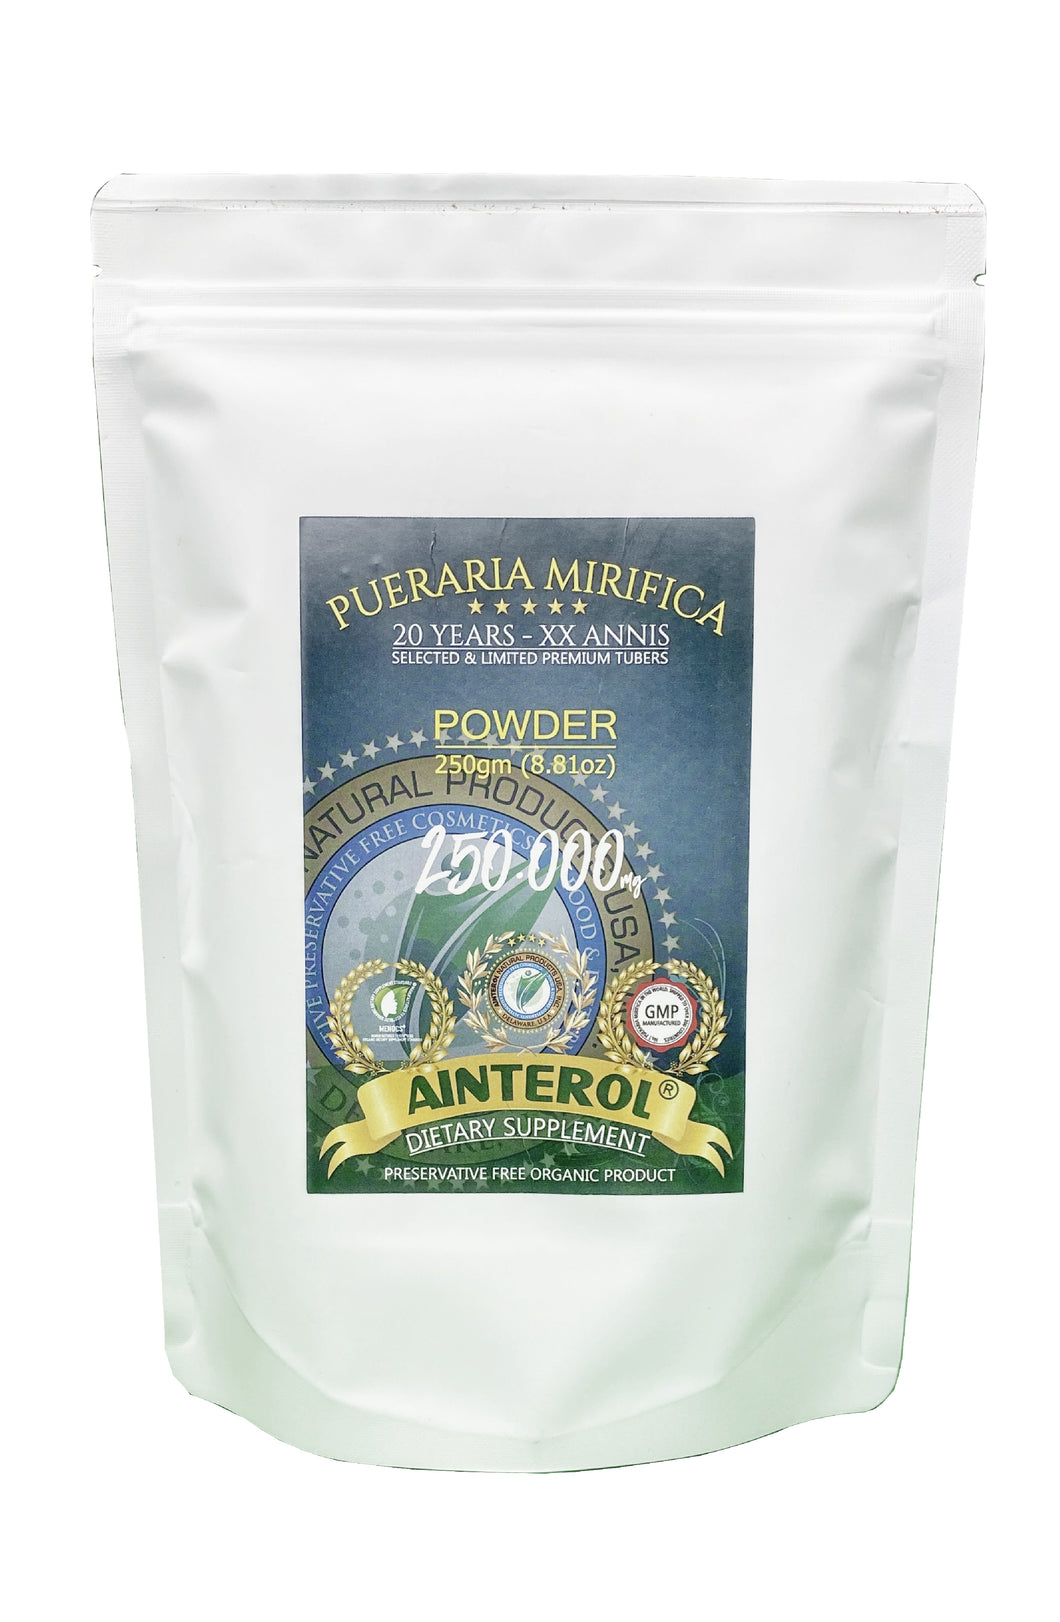 AINTEROL® Pueraria Mirifica en polvo - 250gm (8.81oz)